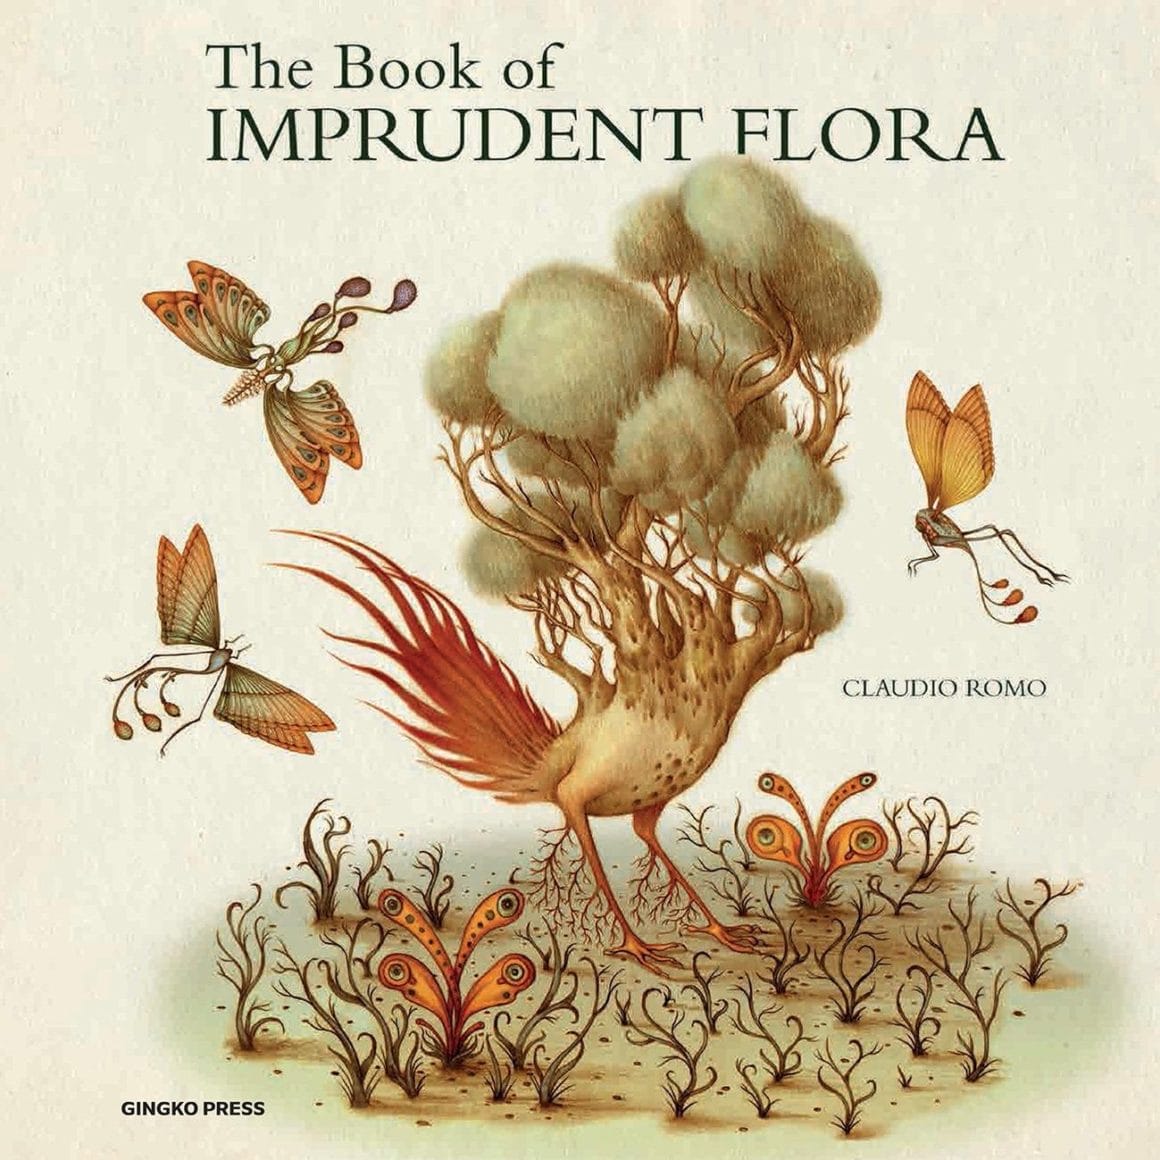 Cette illustration représente la couverture de The book of imprudent Flora.